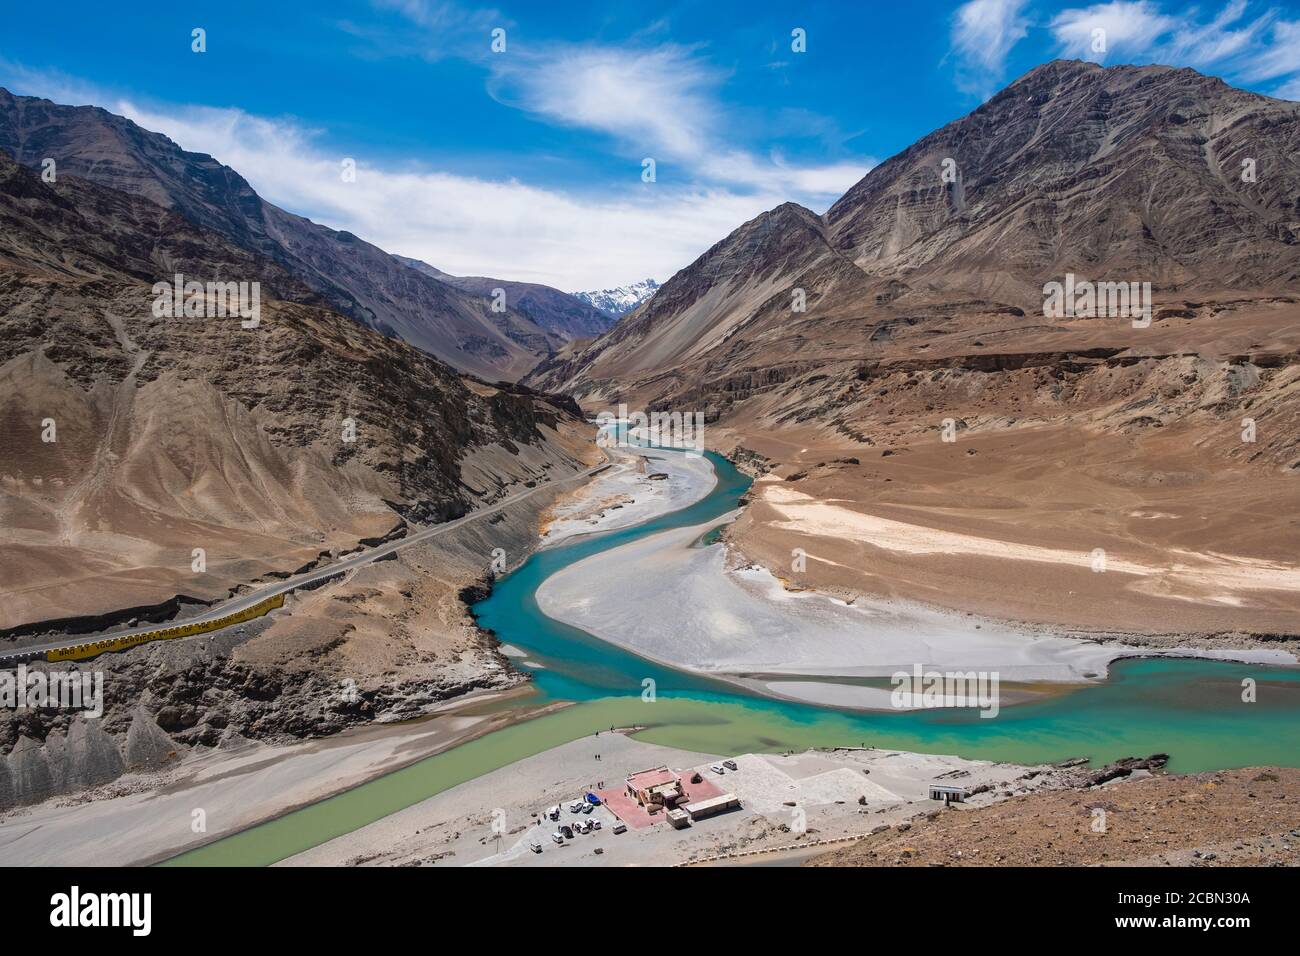 Zusammenfluss des Indus und Zanskar Fluss in Leh, Ladakh Region, Indien Stockfoto